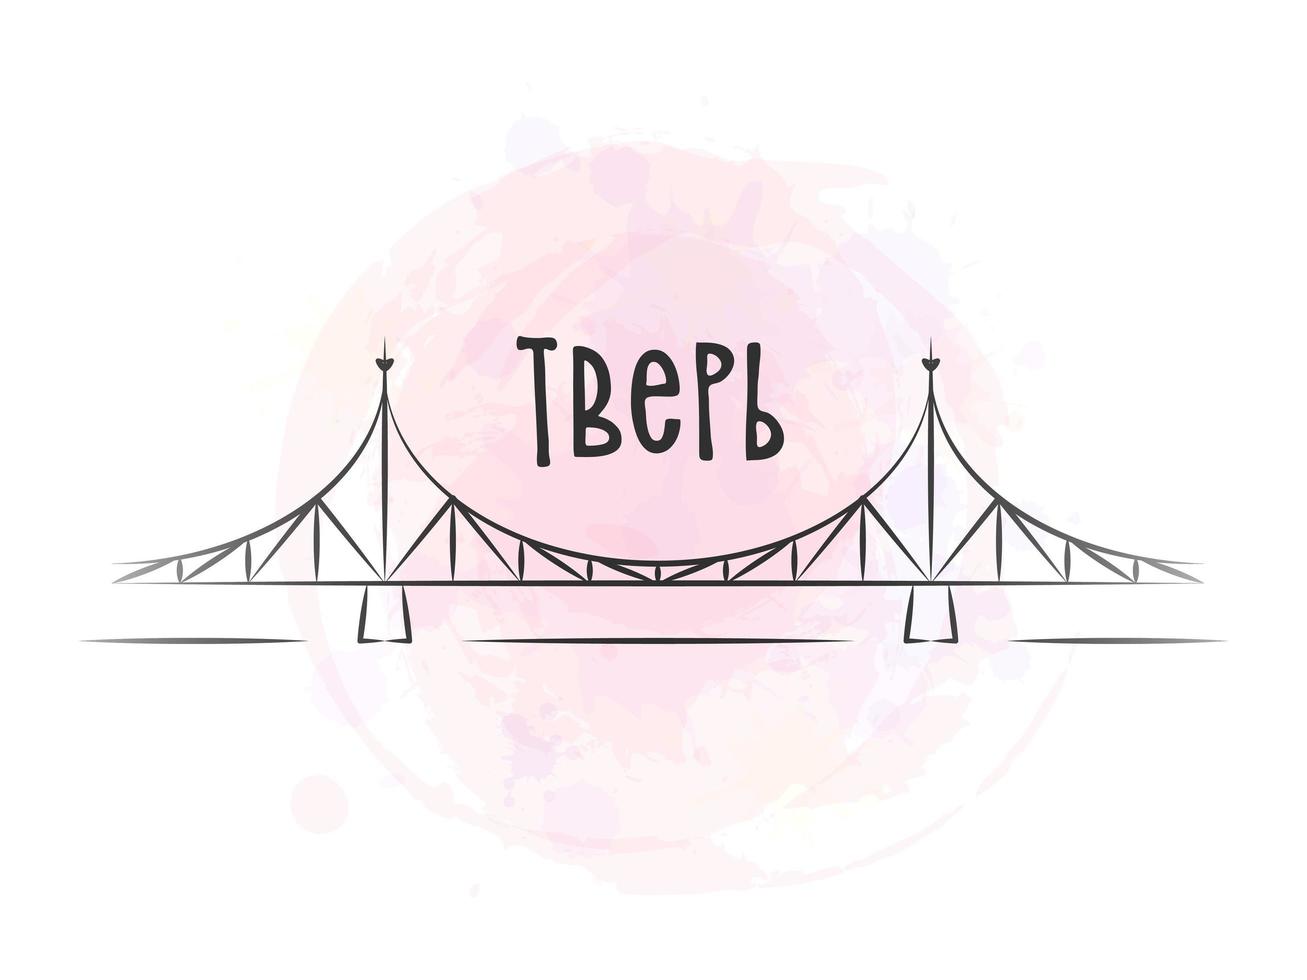 tver - de inscriptie in het Russisch. de oude brug is het belangrijkste symbool van de stad. vectorillustratie. roze aquarel achtergrond. vector